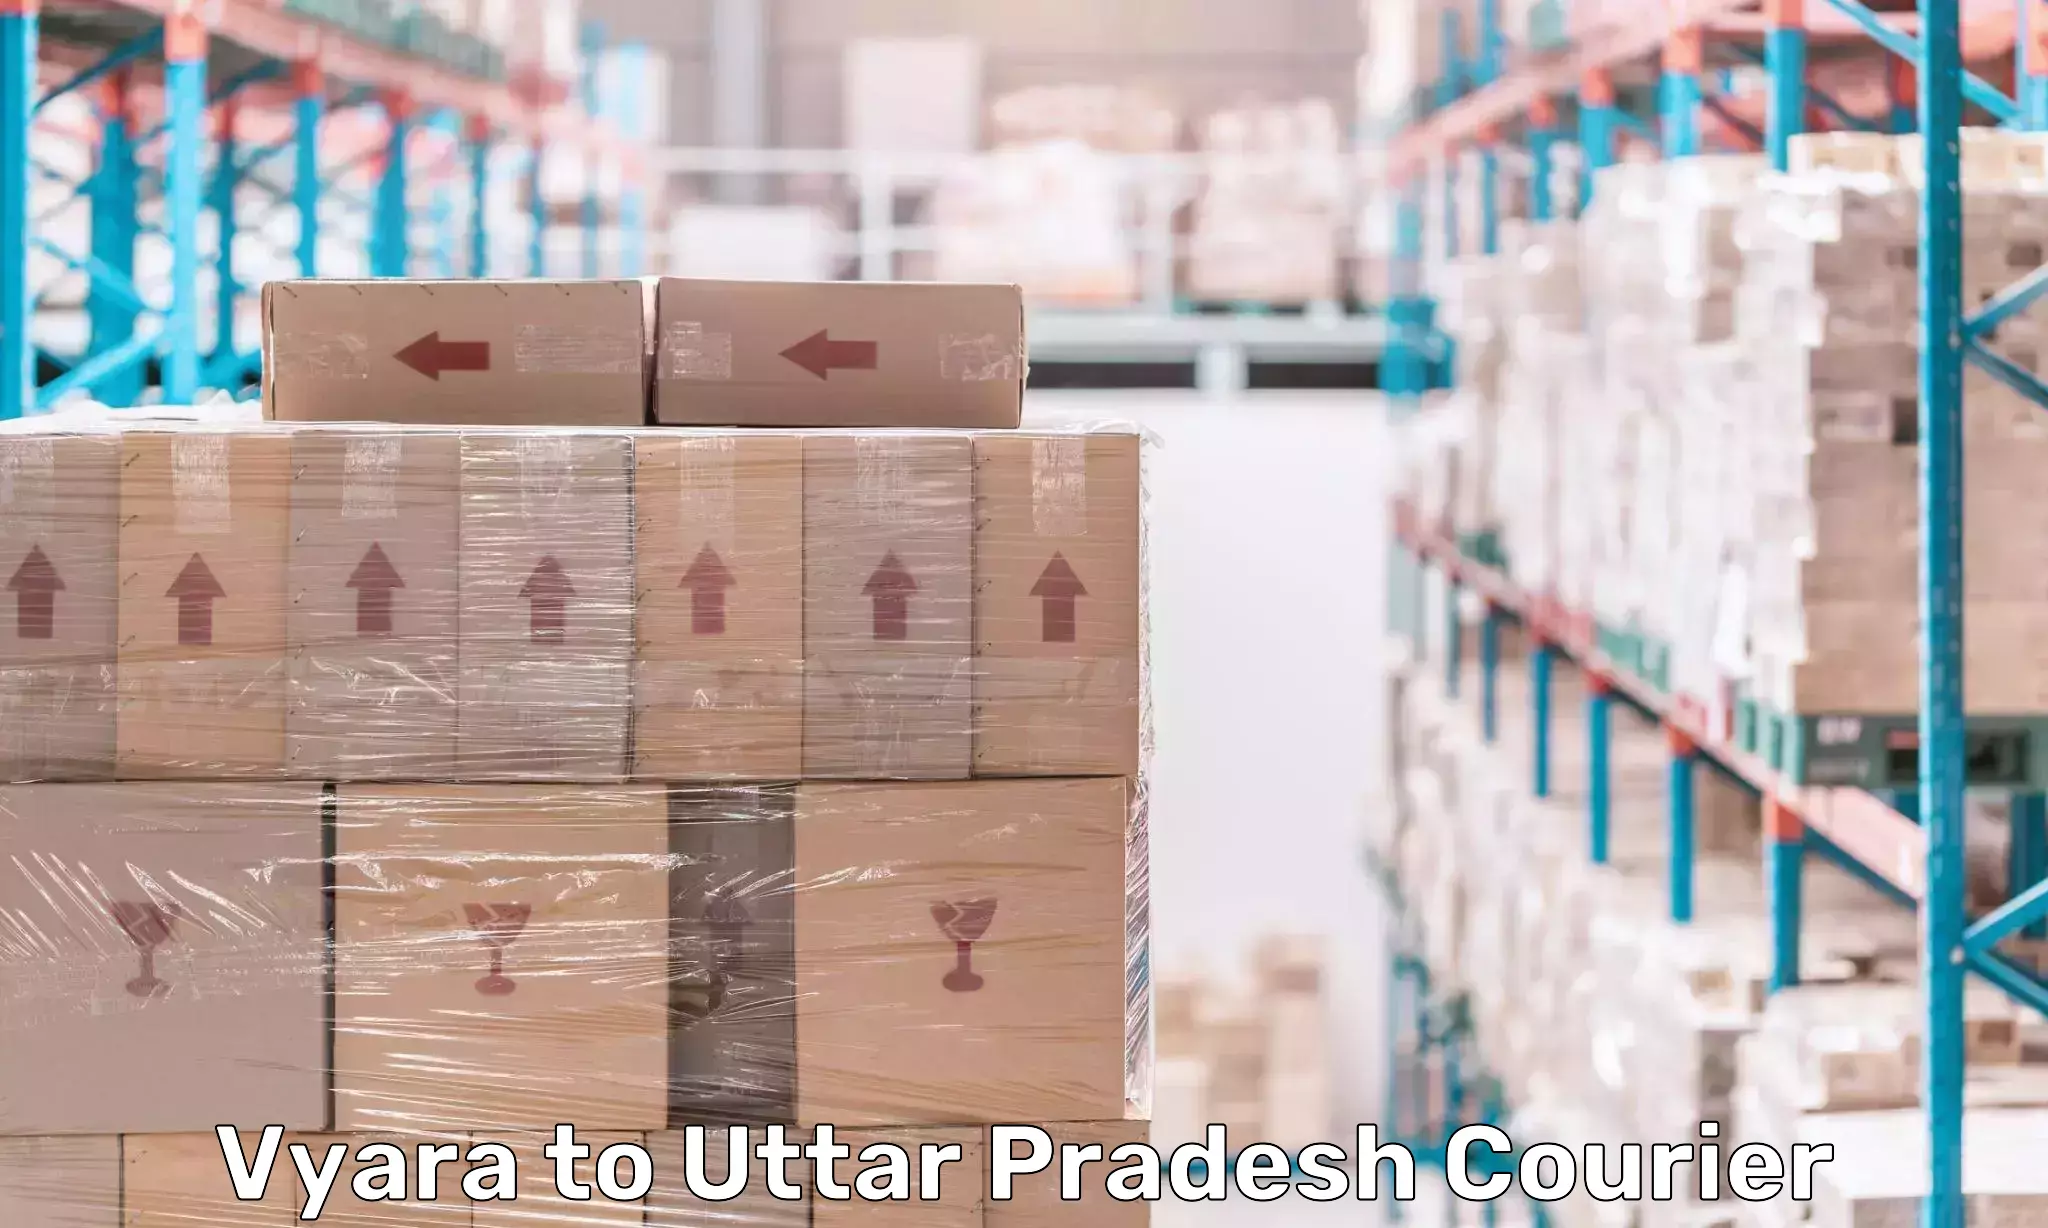 Global shipping solutions Vyara to Khurja